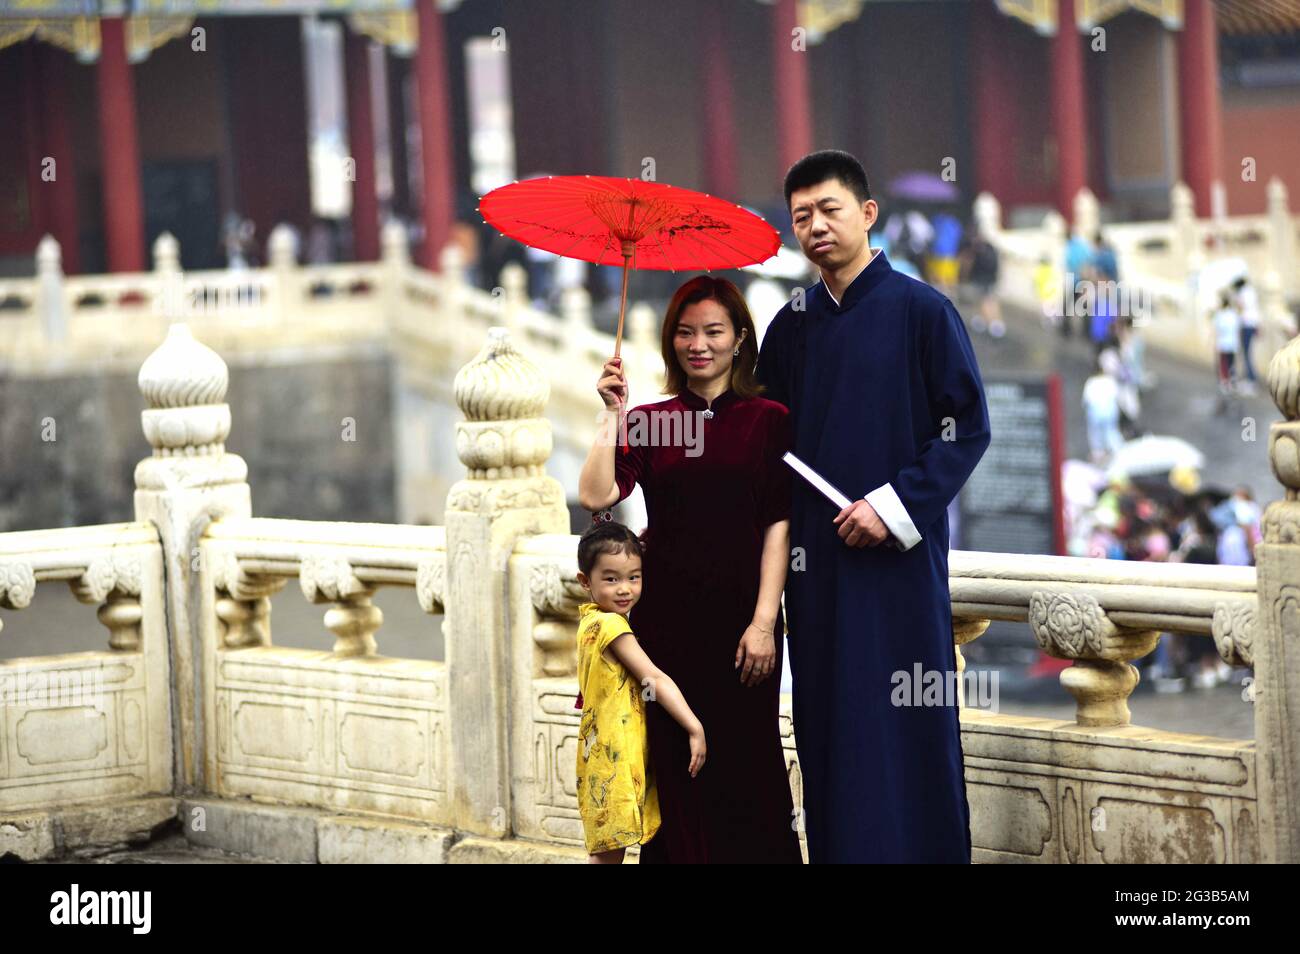 Peking, China. Juni 2021. Die Touristen reisen am 14. Juni 2021 in Peking, China, in den kaiserlichen Palast, indem sie die traditionelle Han-chinesische Kleidung tragen.(Foto: TPG/cnsphotos) Quelle: TopPhoto/Alamy Live News Stockfoto